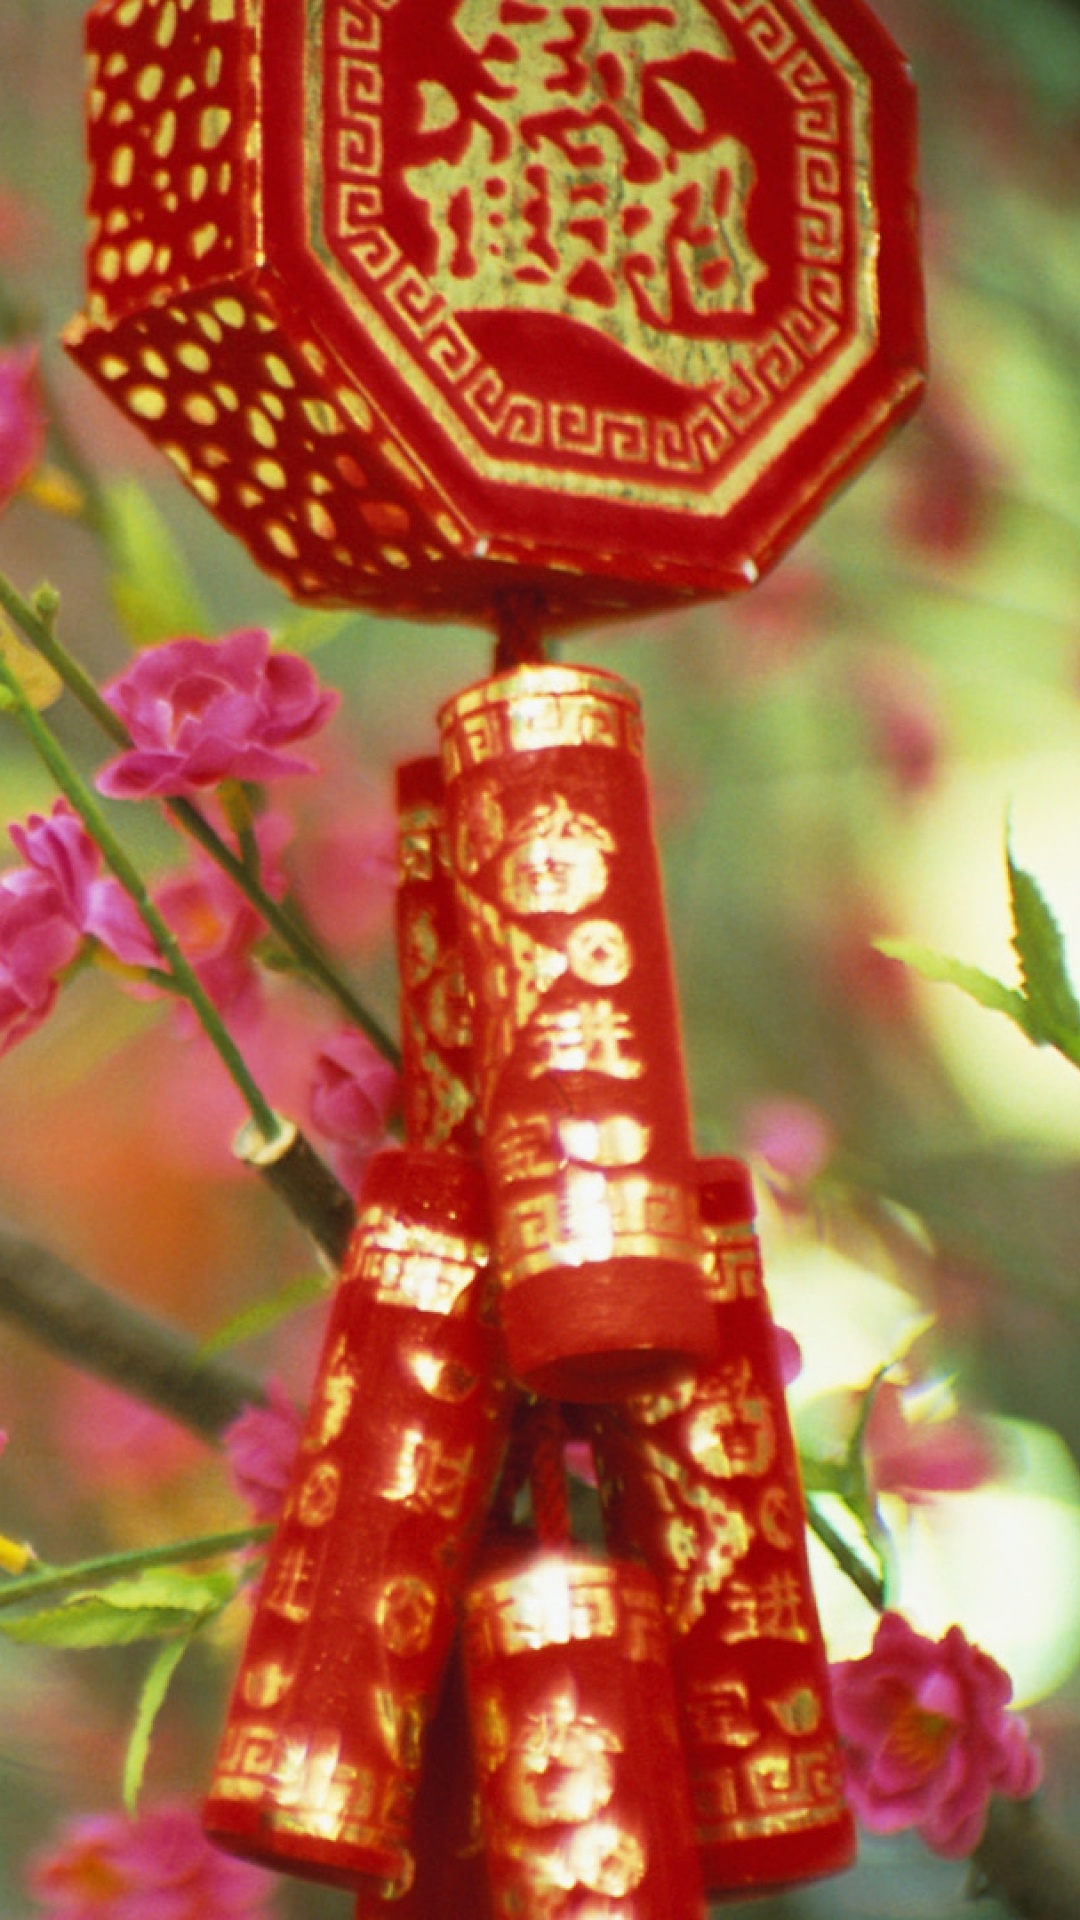 中国, 粉红色, 弹簧, 开花, 中国农历新年 壁纸 1080x1920 允许